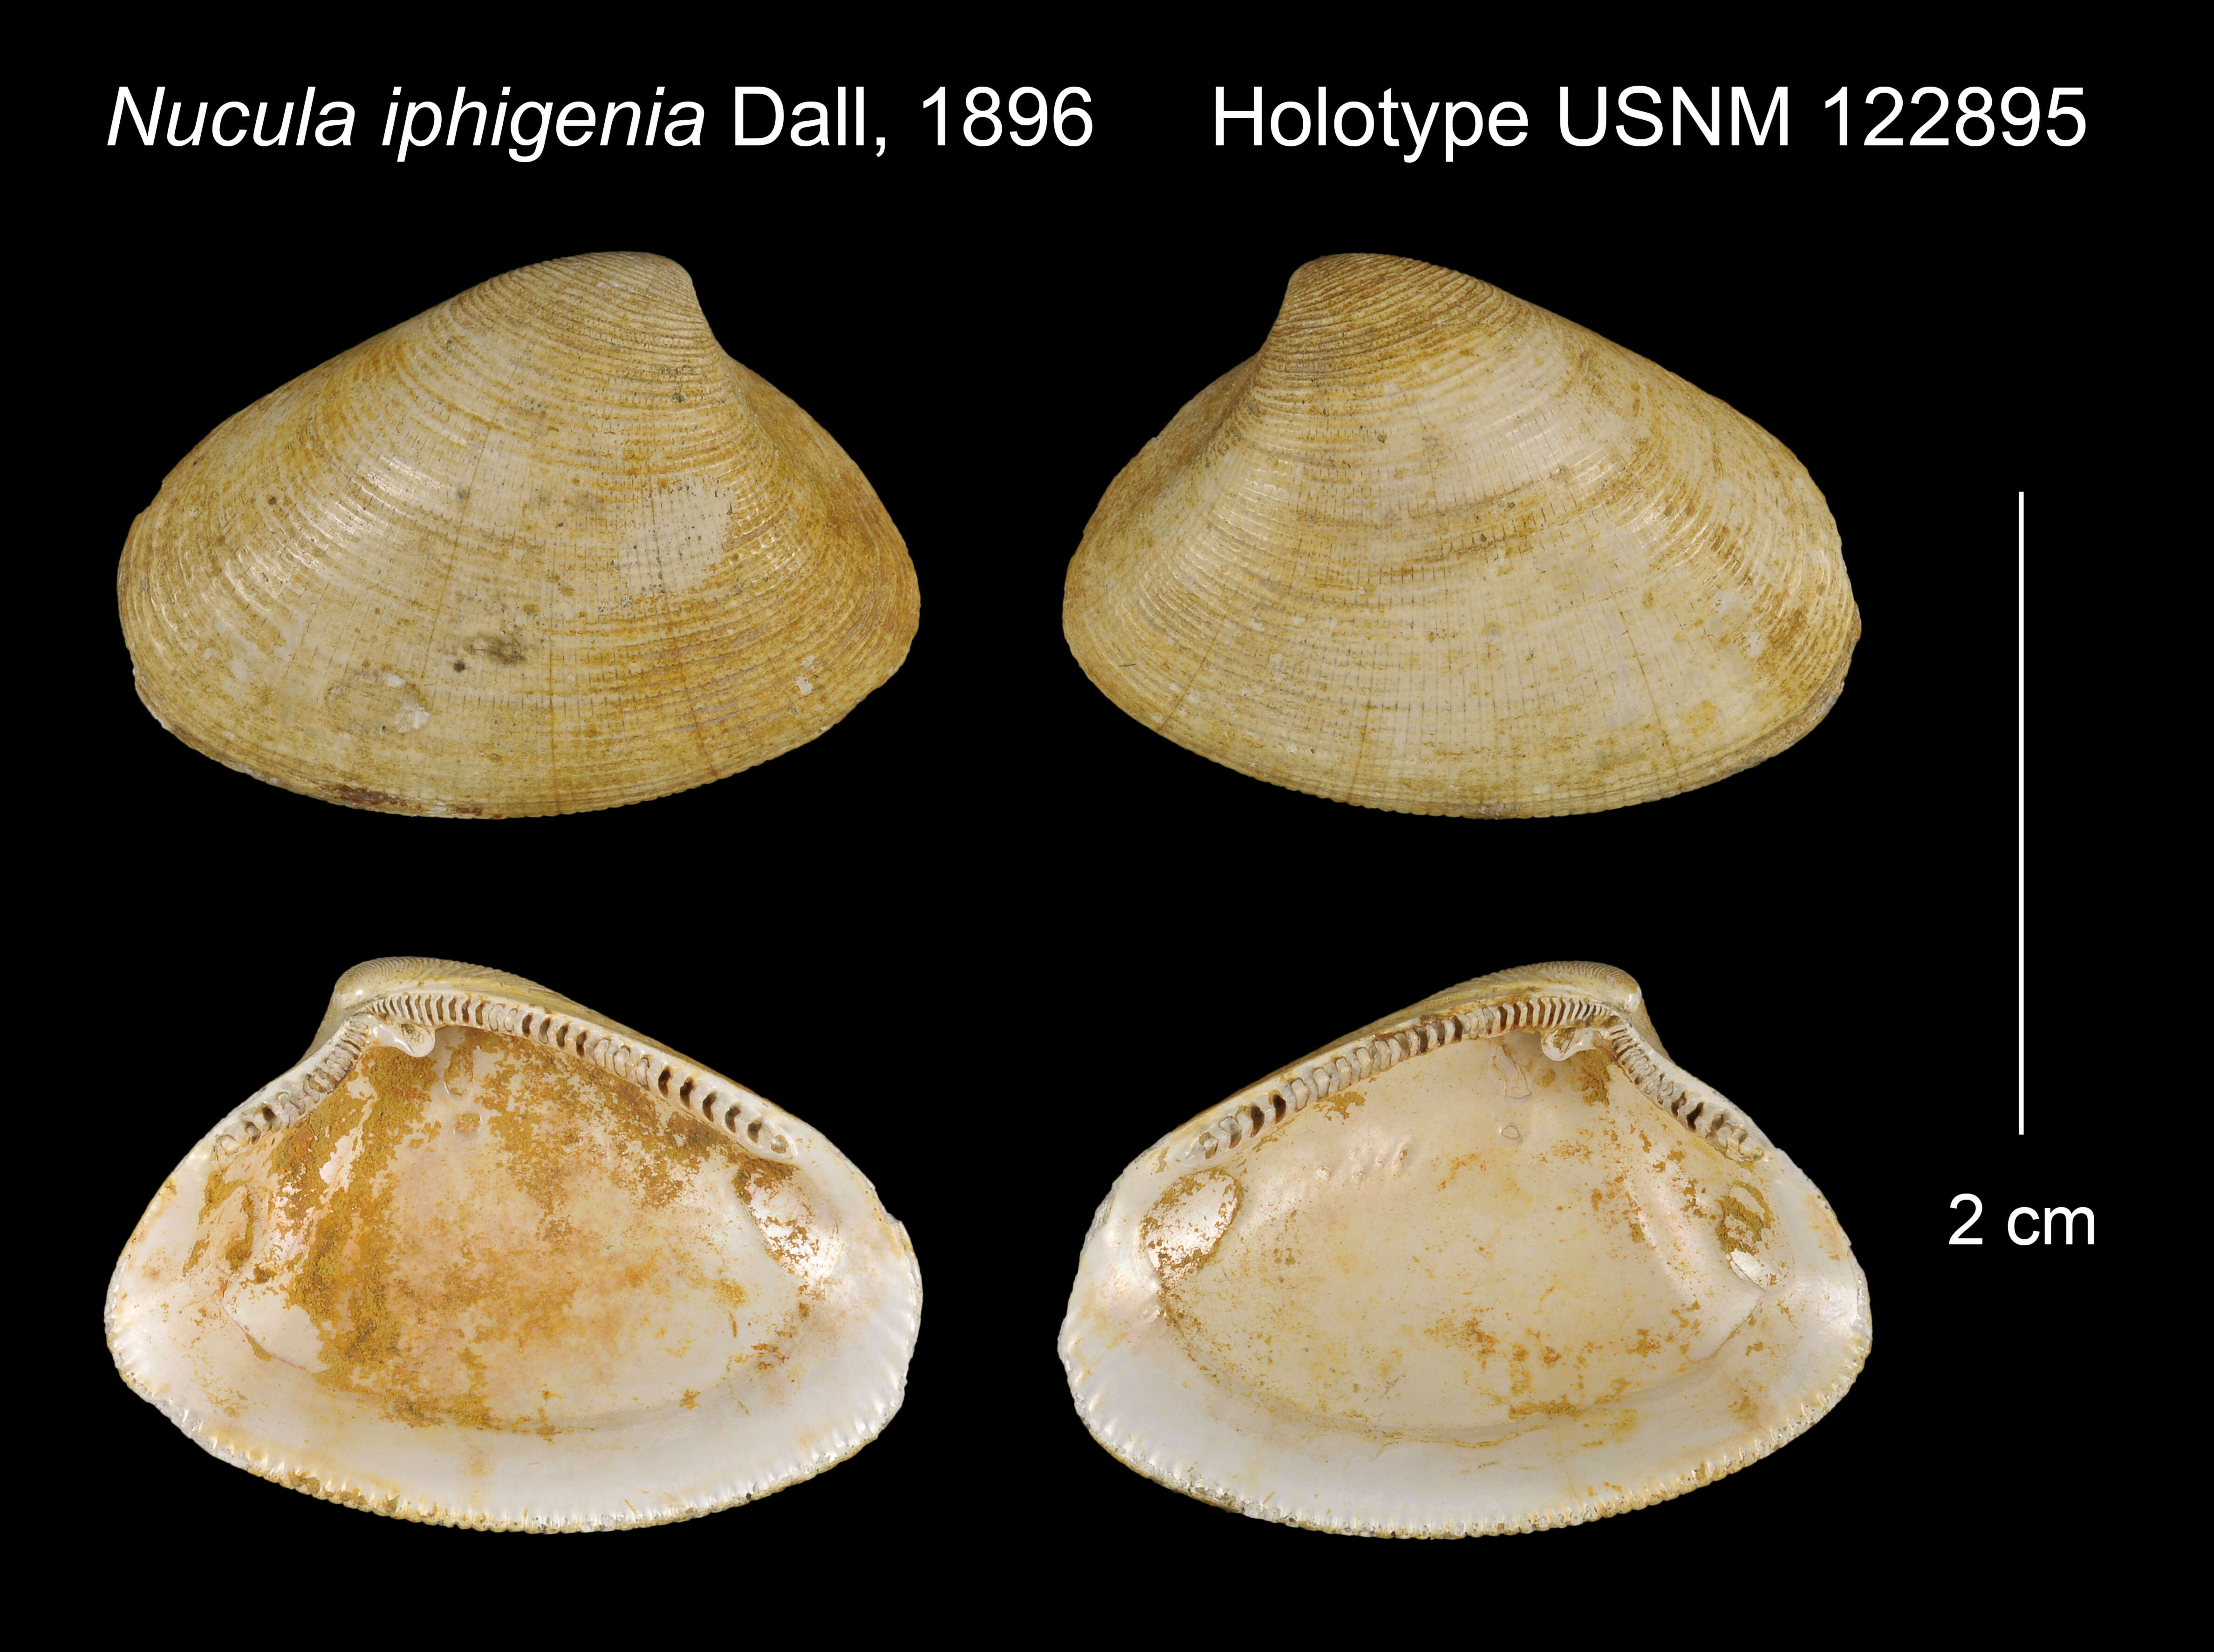 Image of Nucula iphigenia Dall 1896